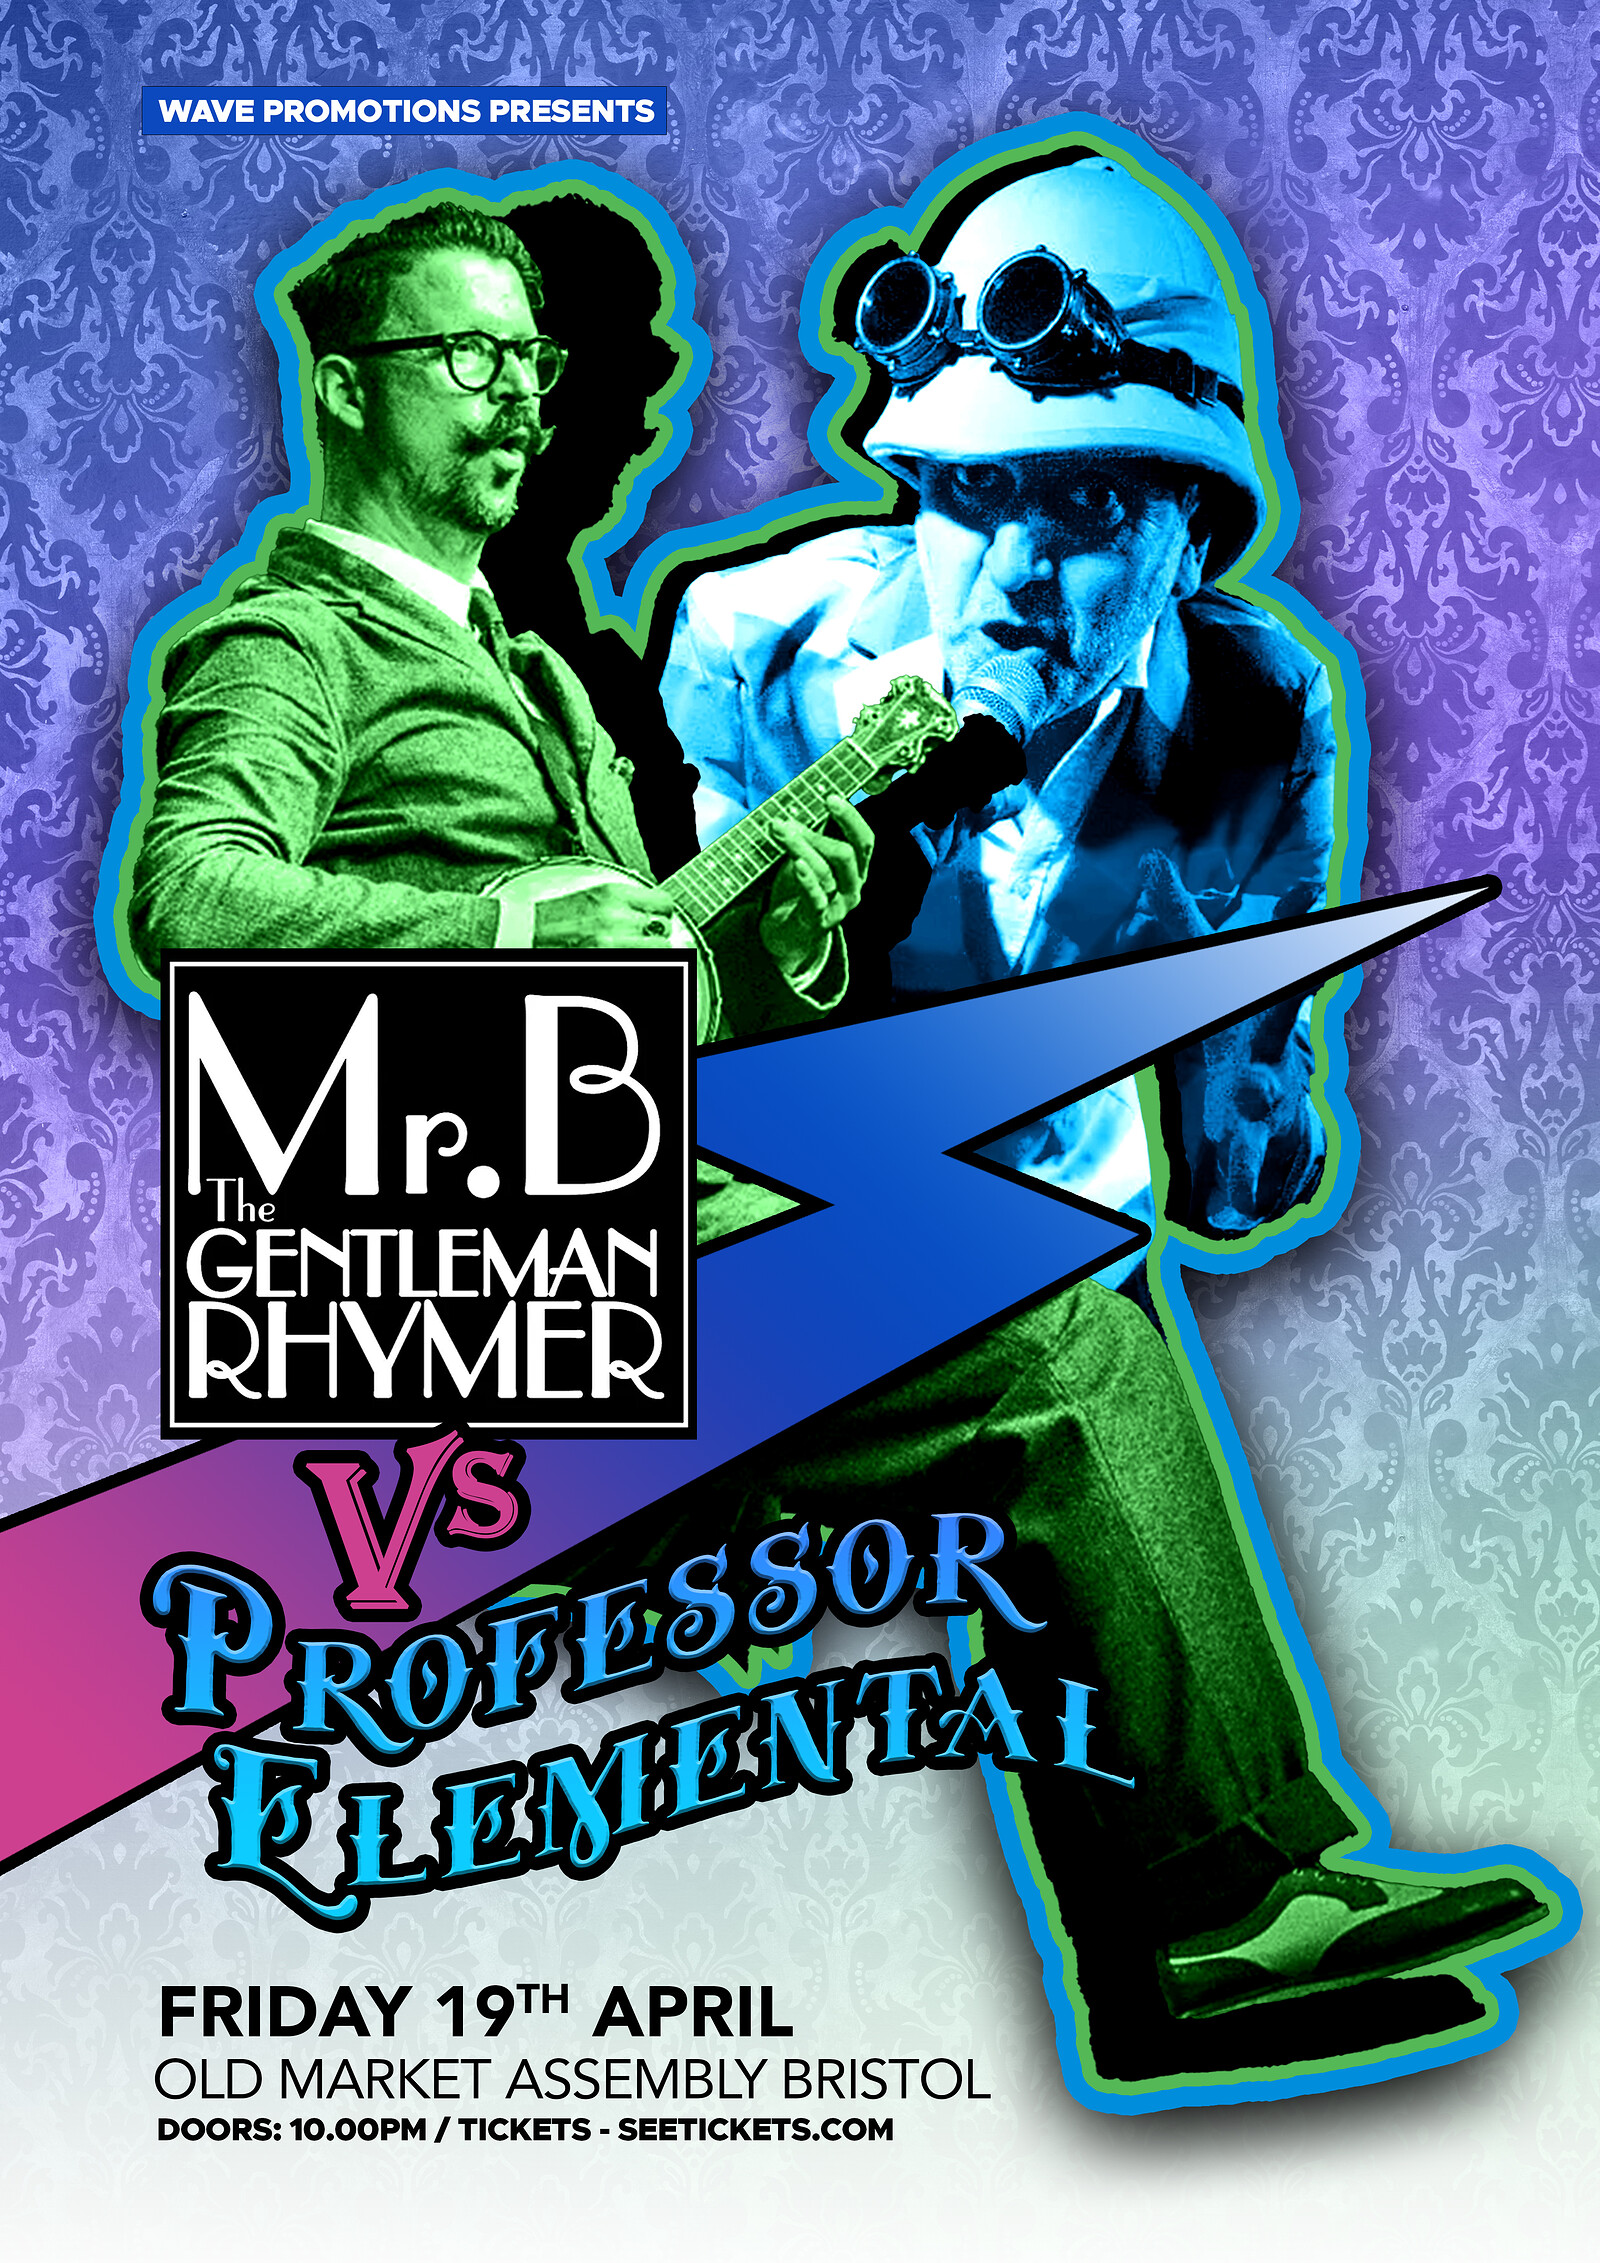 Mr B Gentleman Rhymer V Professor Elemental at The Old Market Assembly